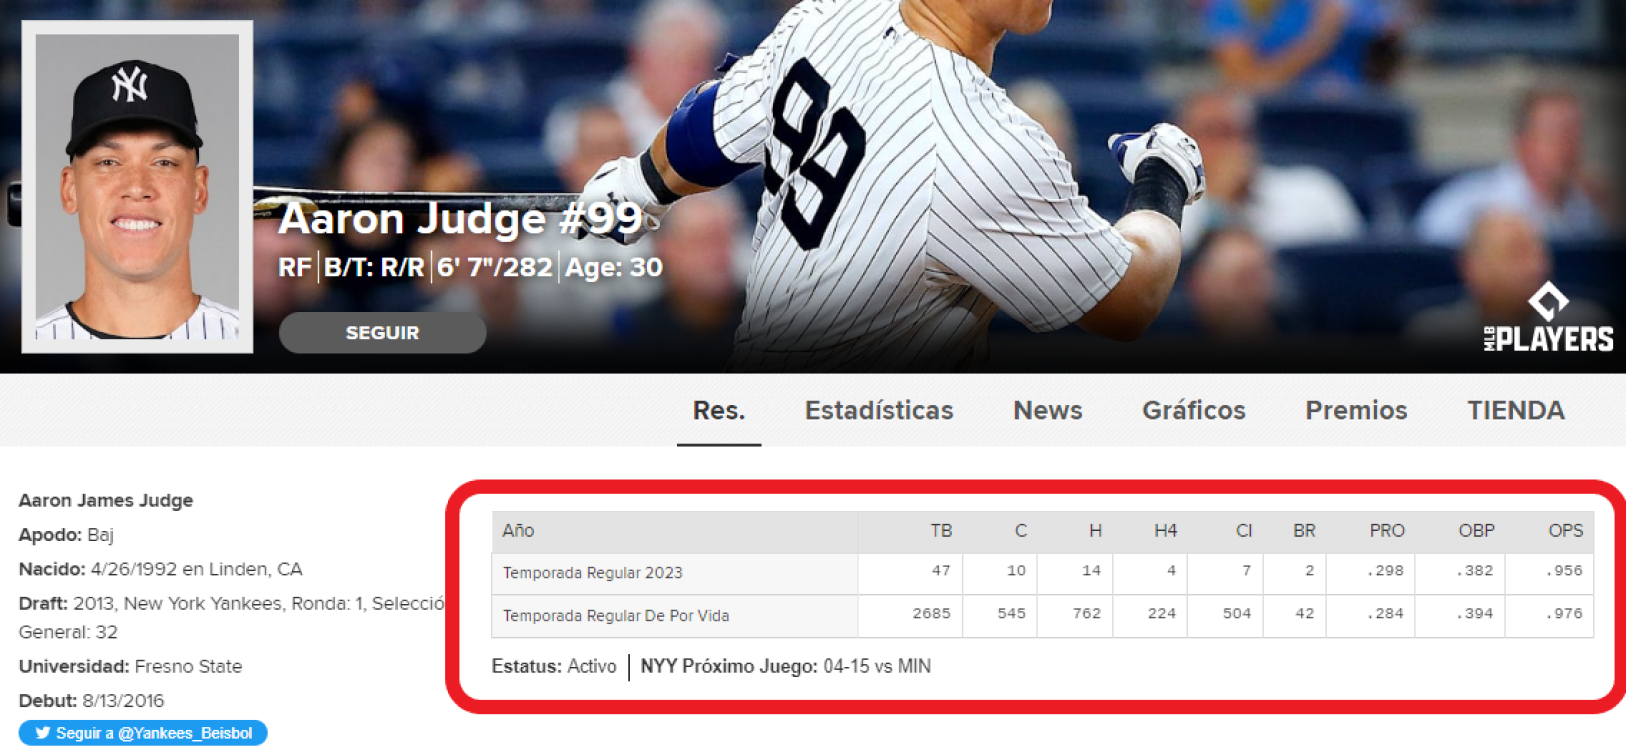 Aaron Judge, la gran estrella de estos Yankees de nueva generación. / Fuente: MLB.com